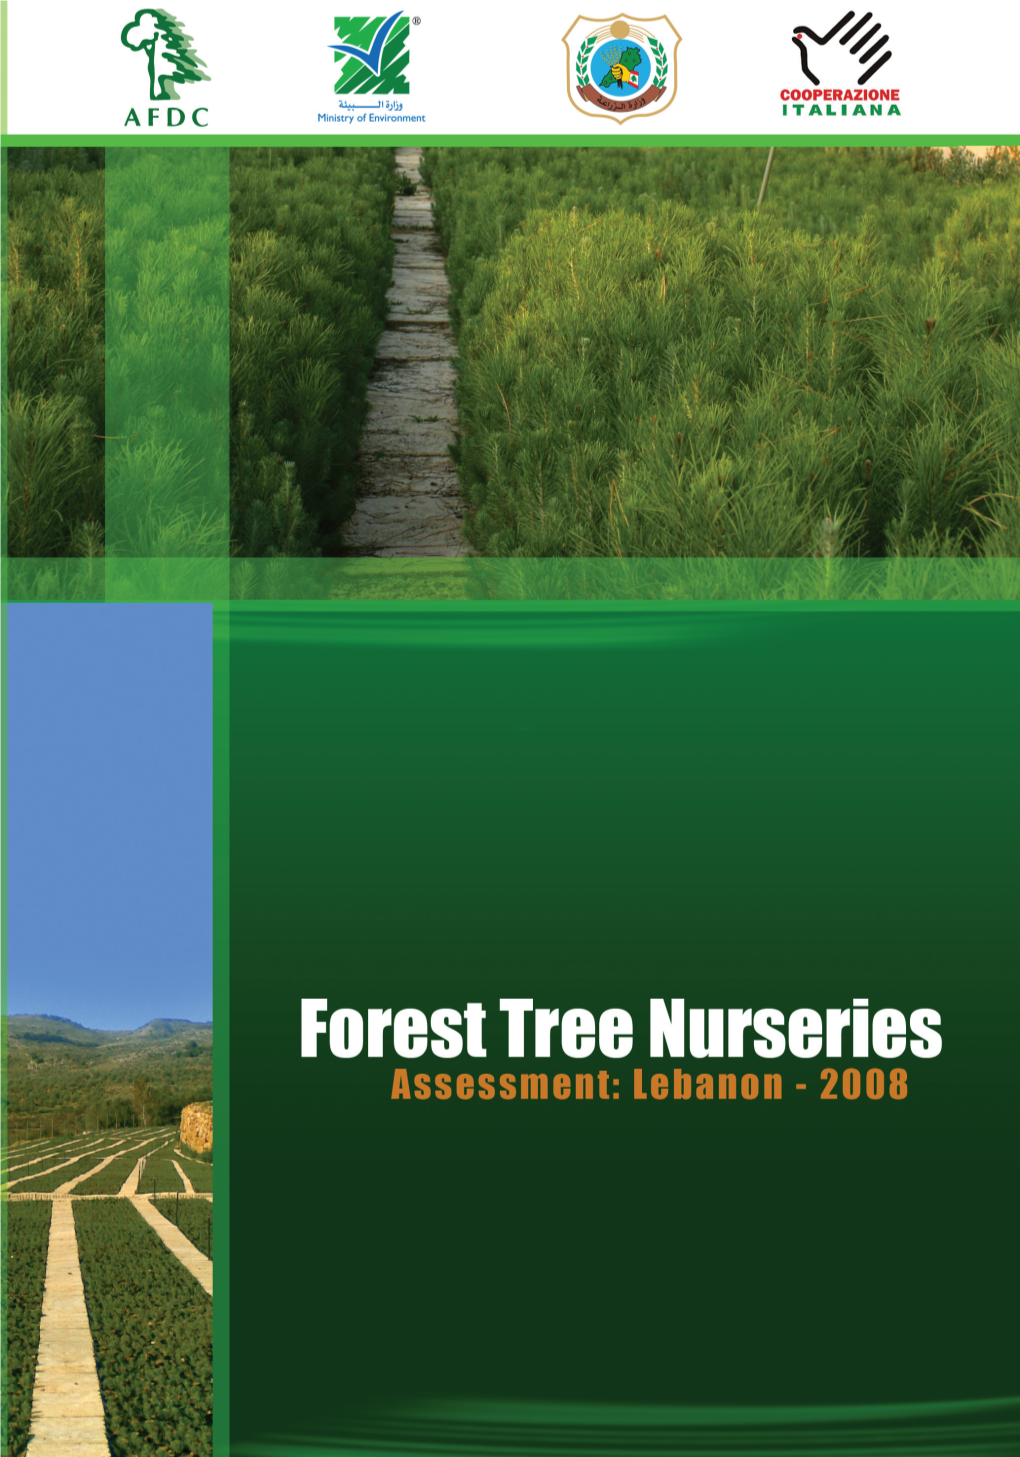 Tree Nurseries Assessment.Pdf